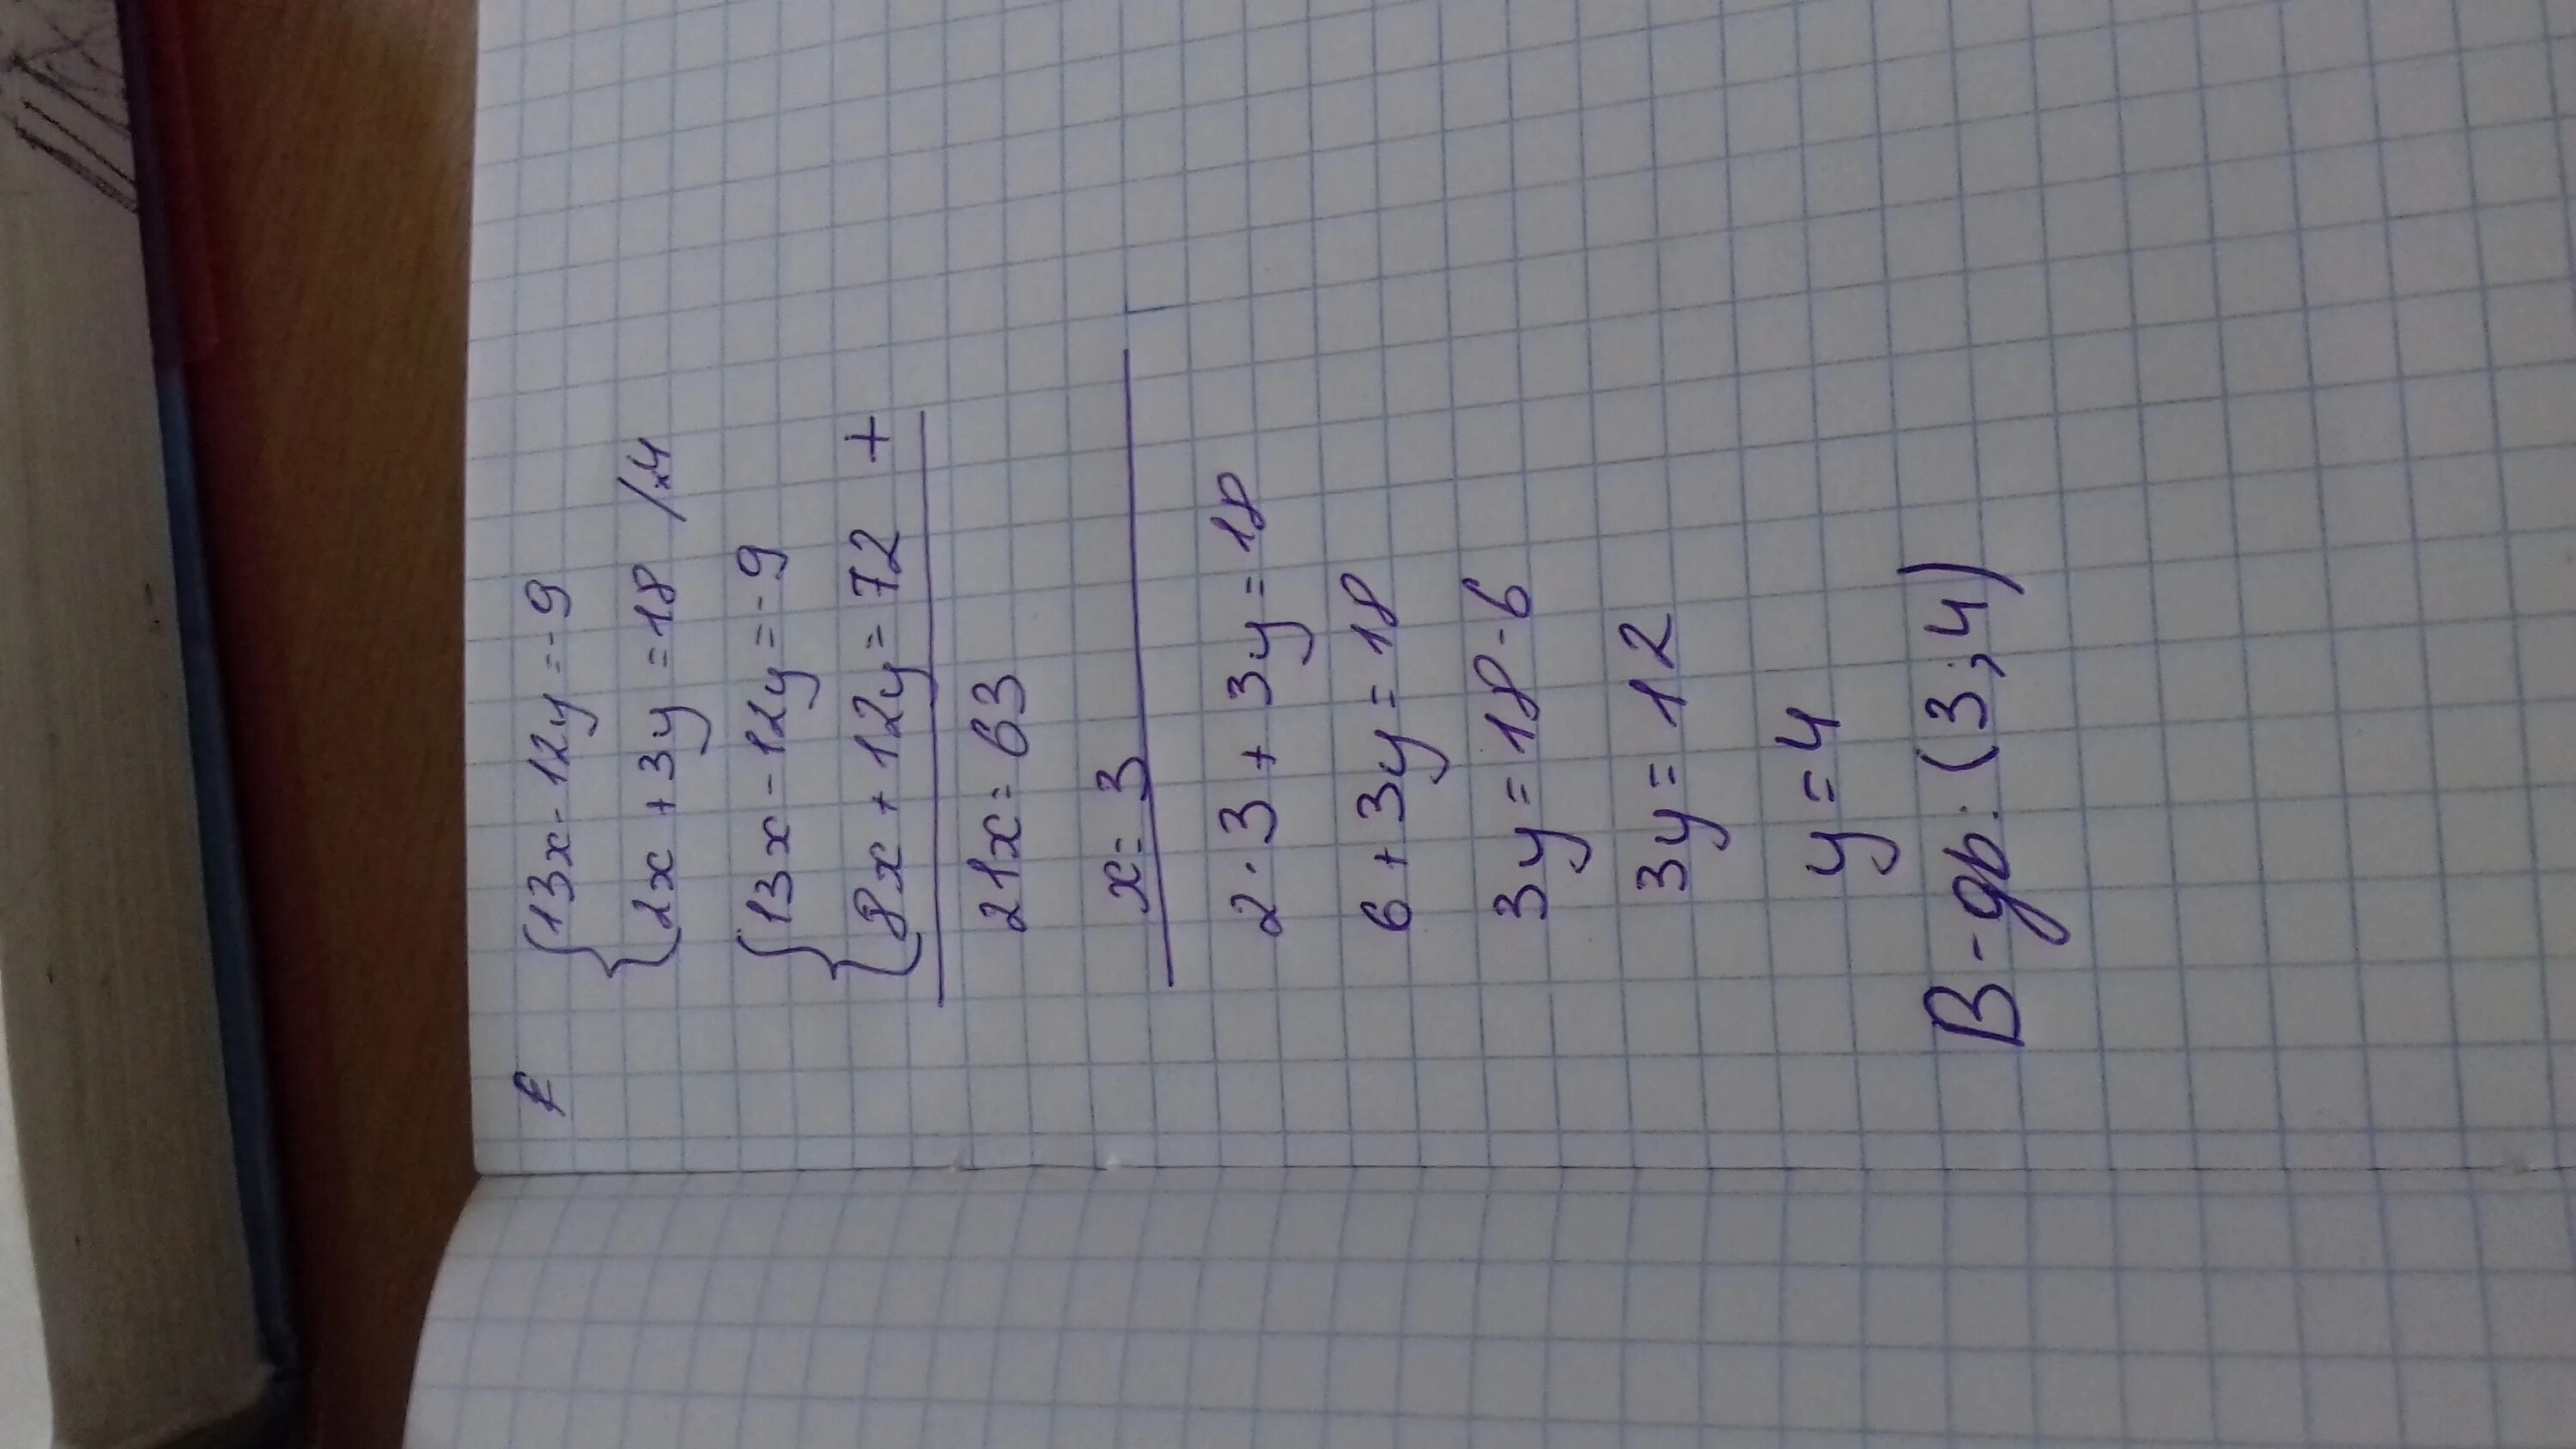 3х у 13 х у 3. 9/3*2. 4х-у=13 5х+3у=12. 3х-9у=12. 9 3 12 Х Х-?.